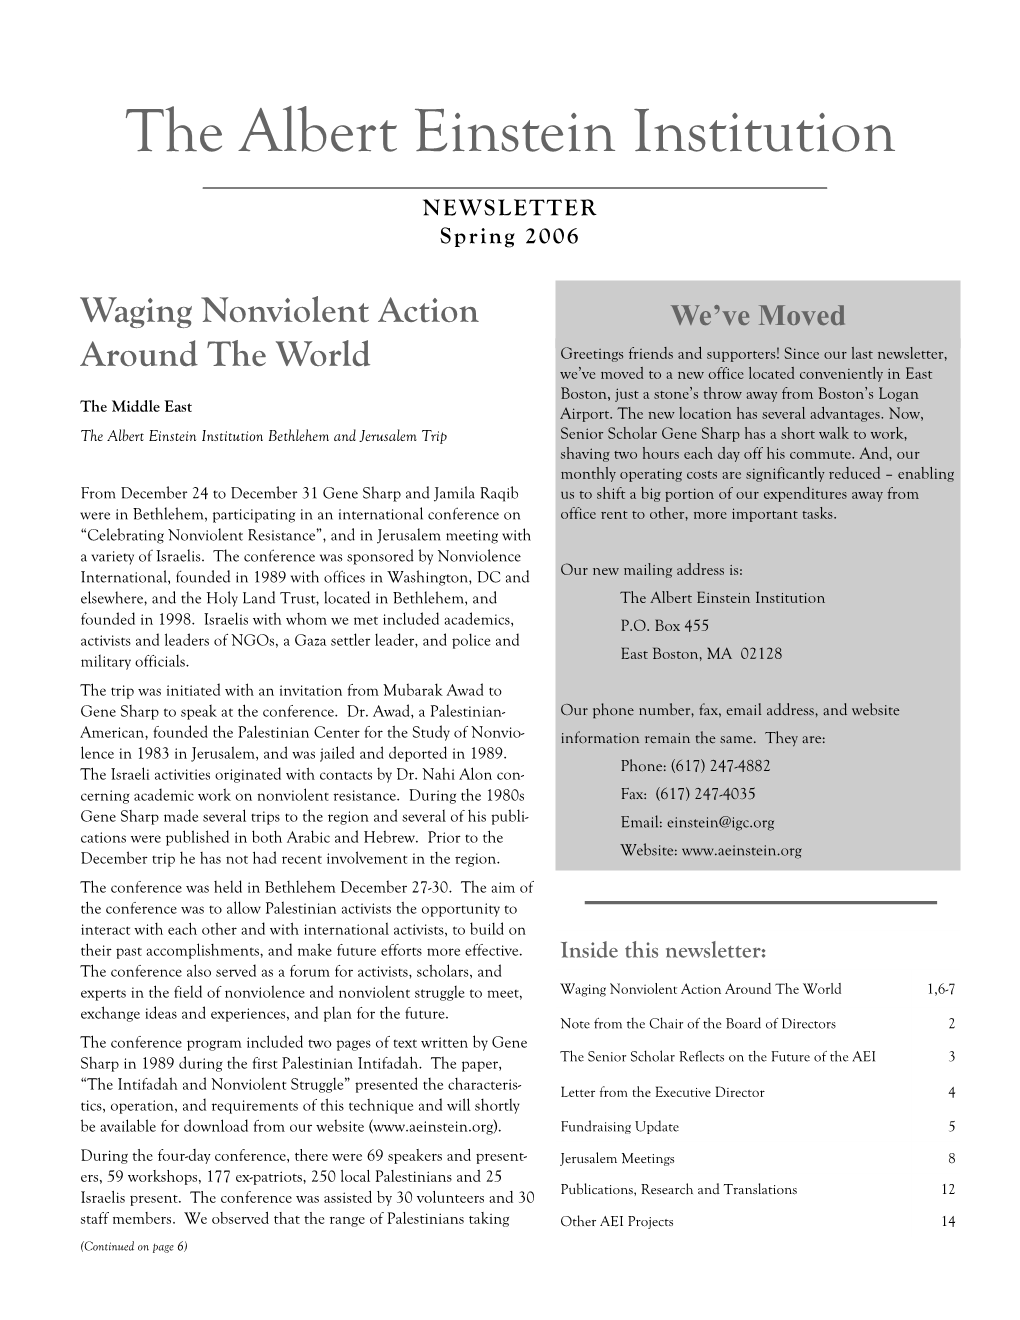 Albert Einstein Institution Newsletter Spring 2006